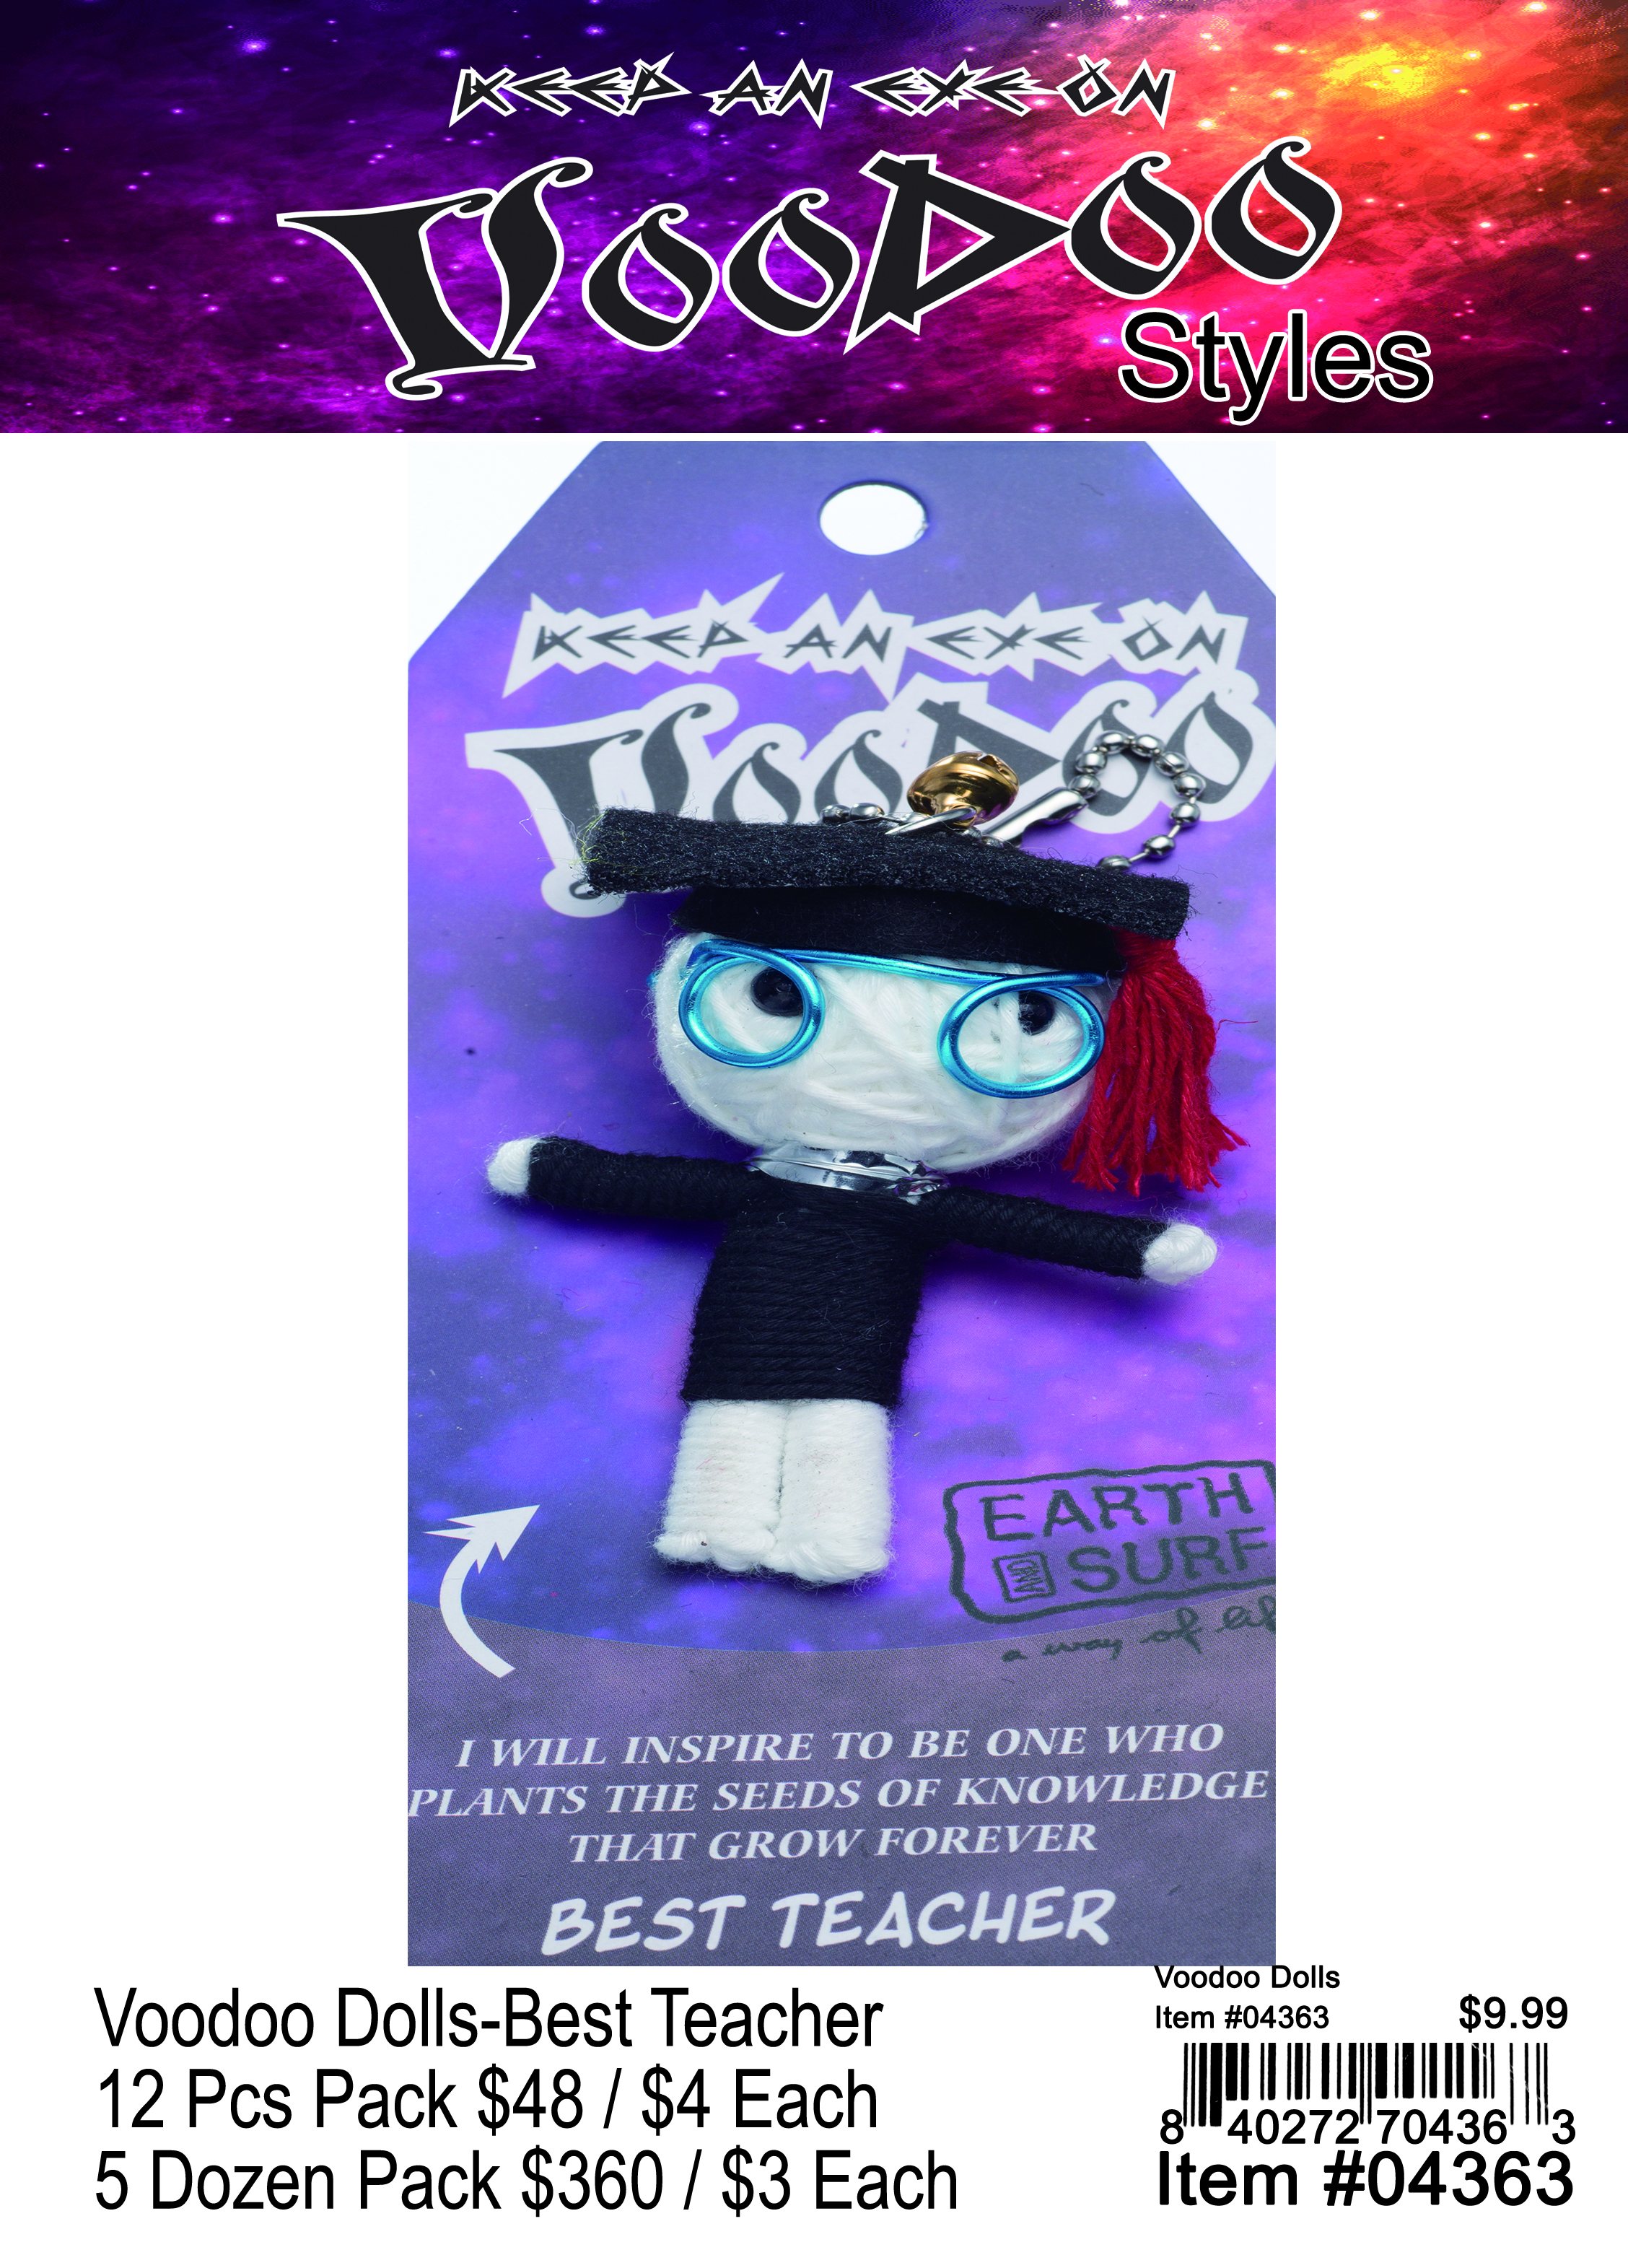 Voodoo Dolls-Best Teacher